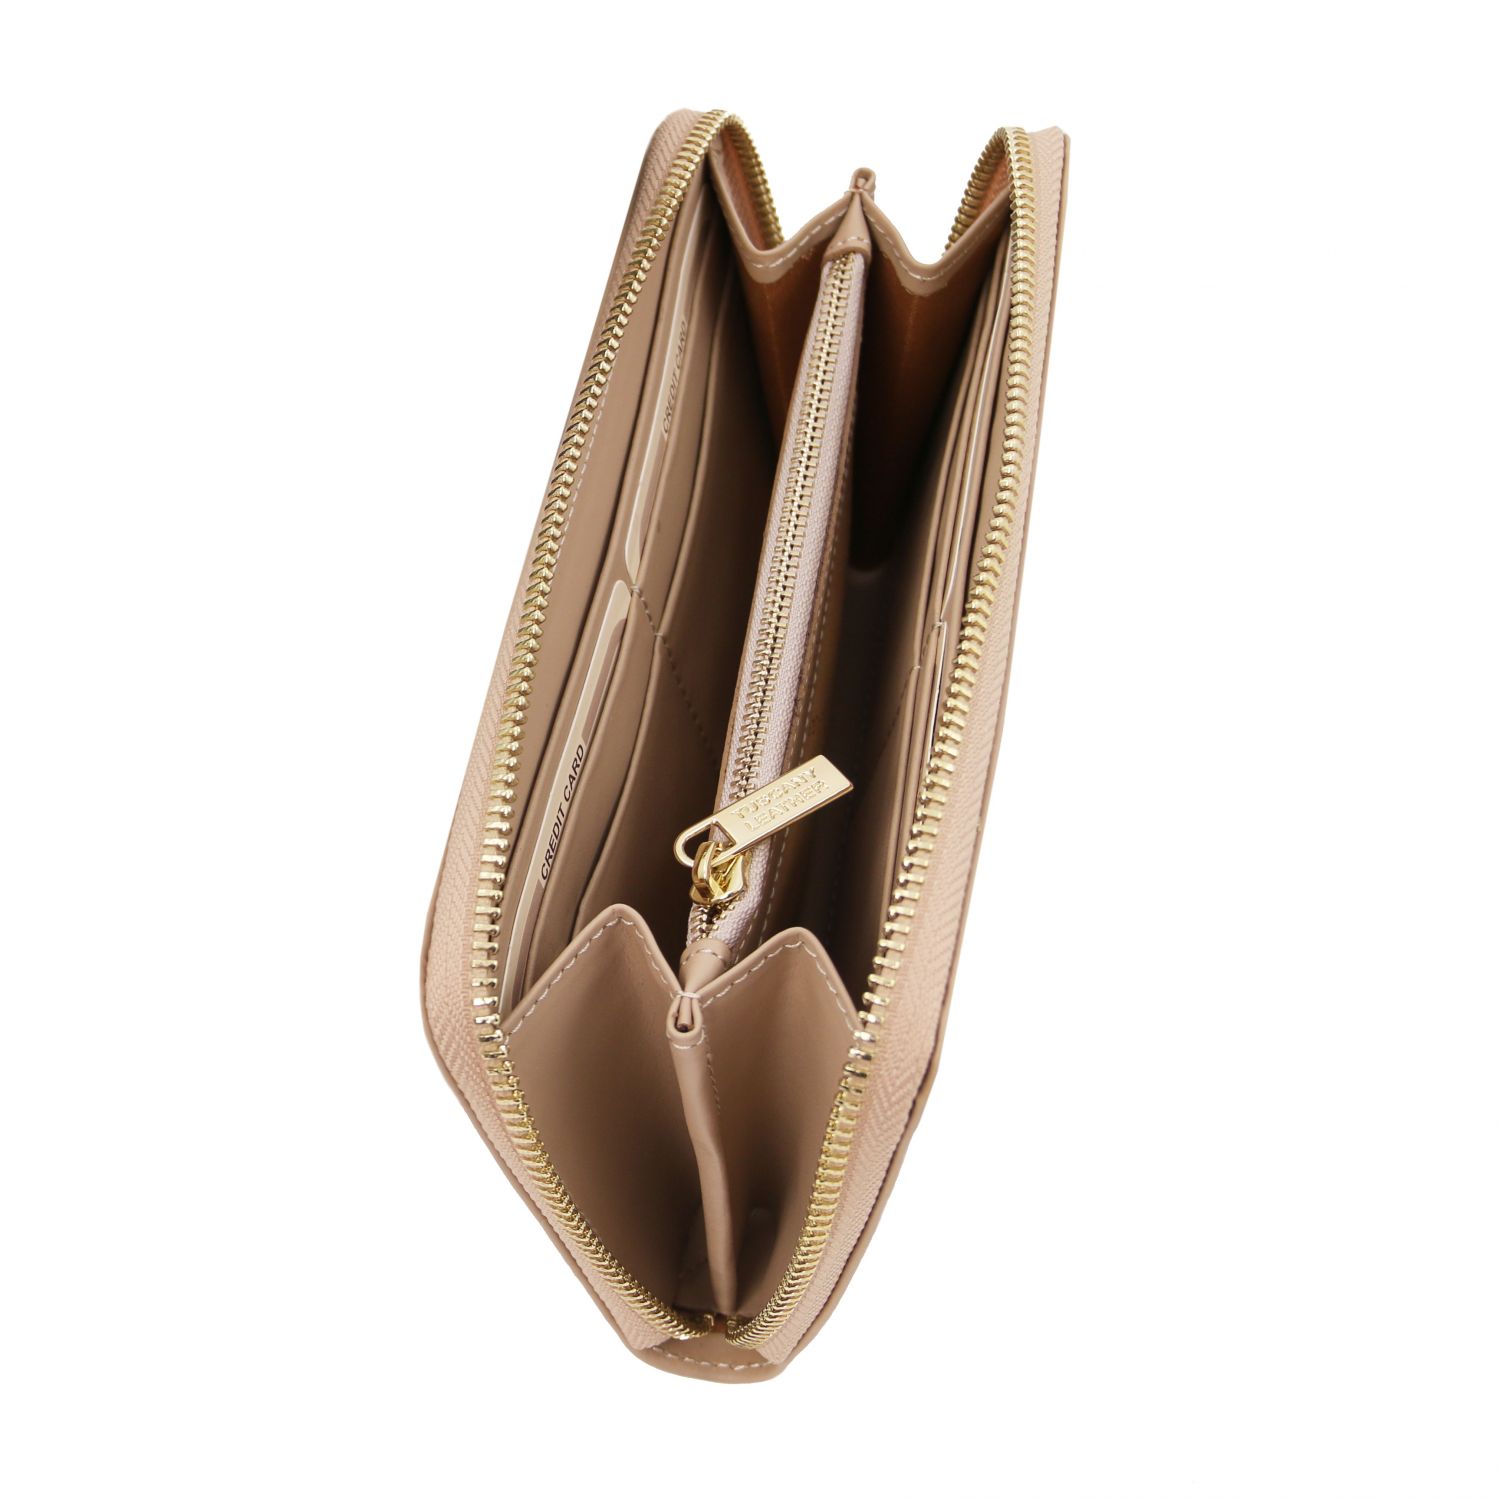 Venere - Elégant portefeuille en cuir avec 3 poches soufflets et fermeture glissière - Champagne (TL142085)